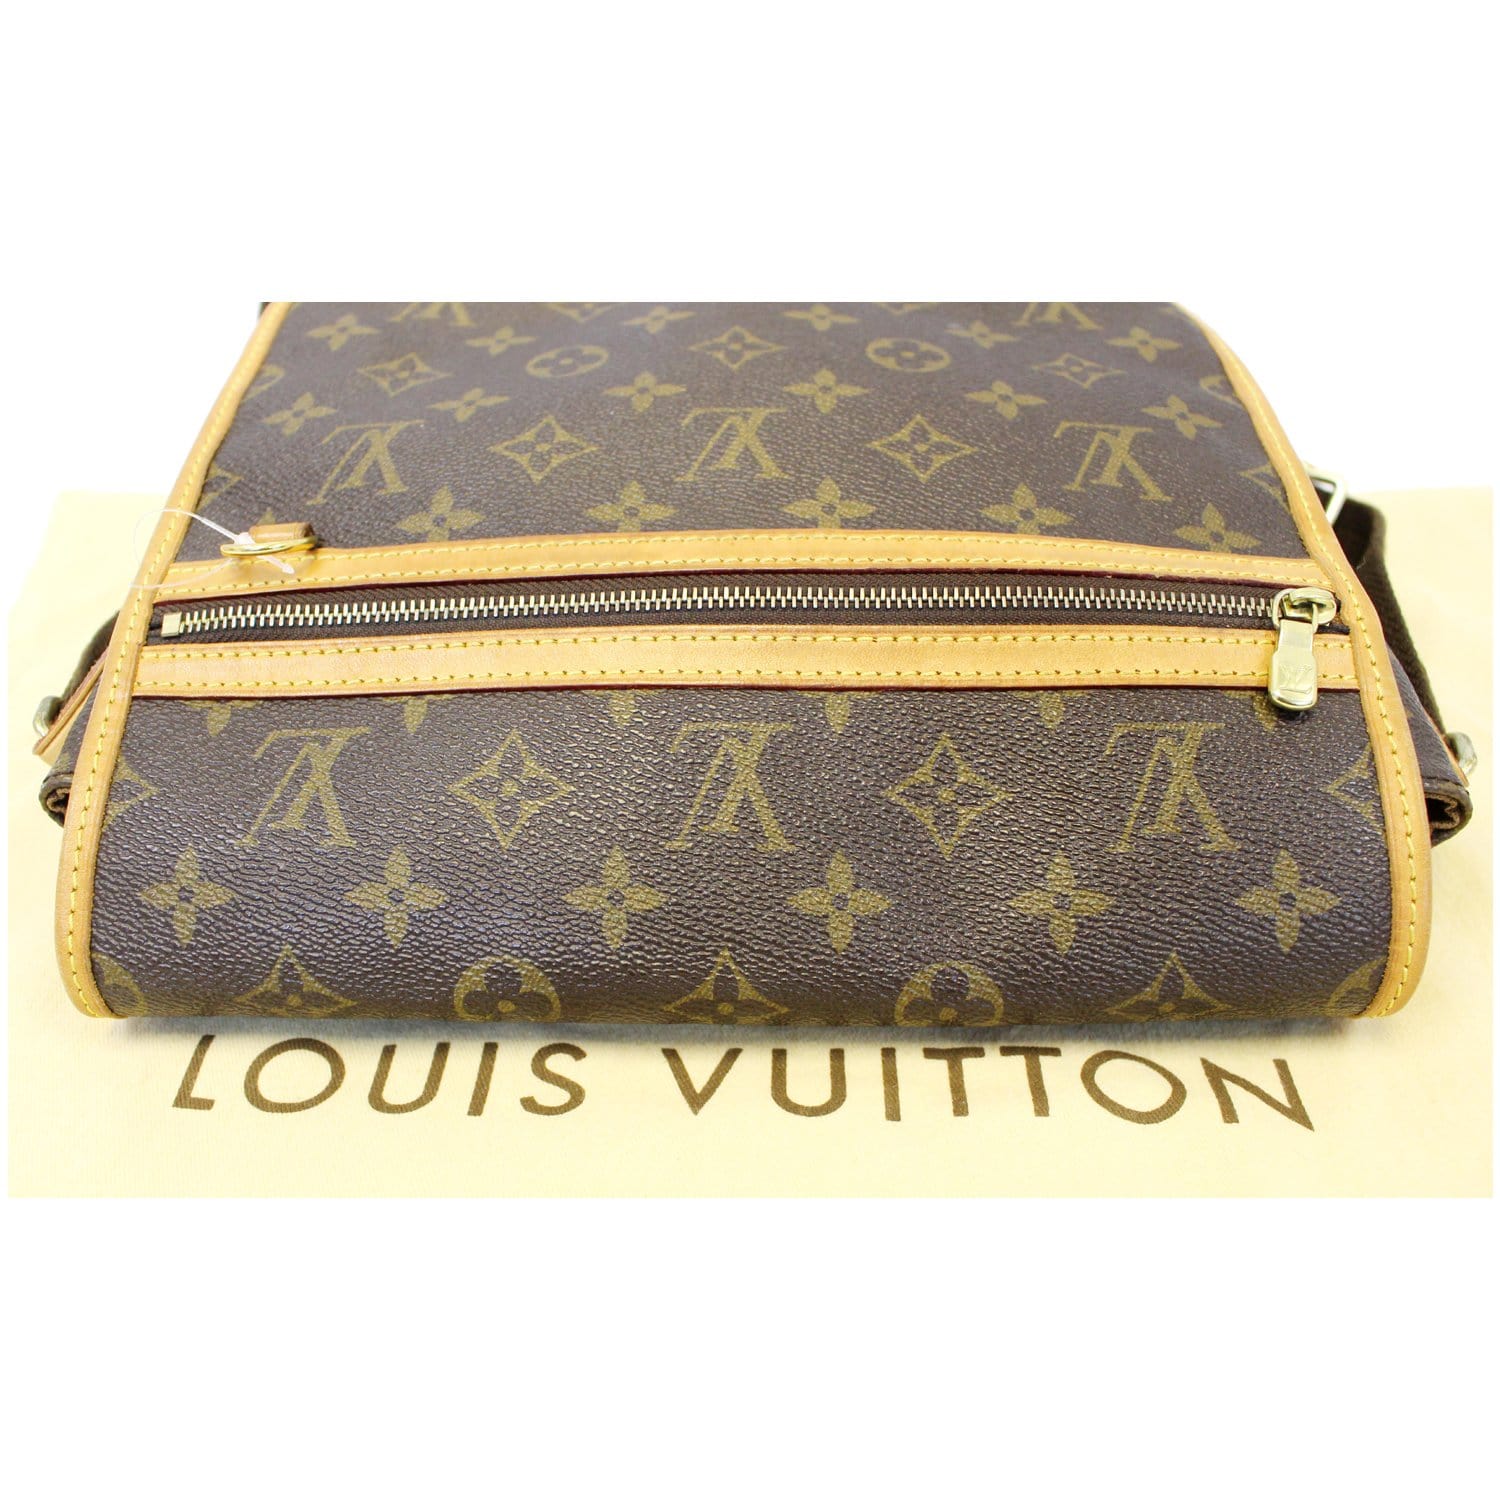 Louis Vuitton Bosphore PM Monogram Canvas Messenger Bag on SALE